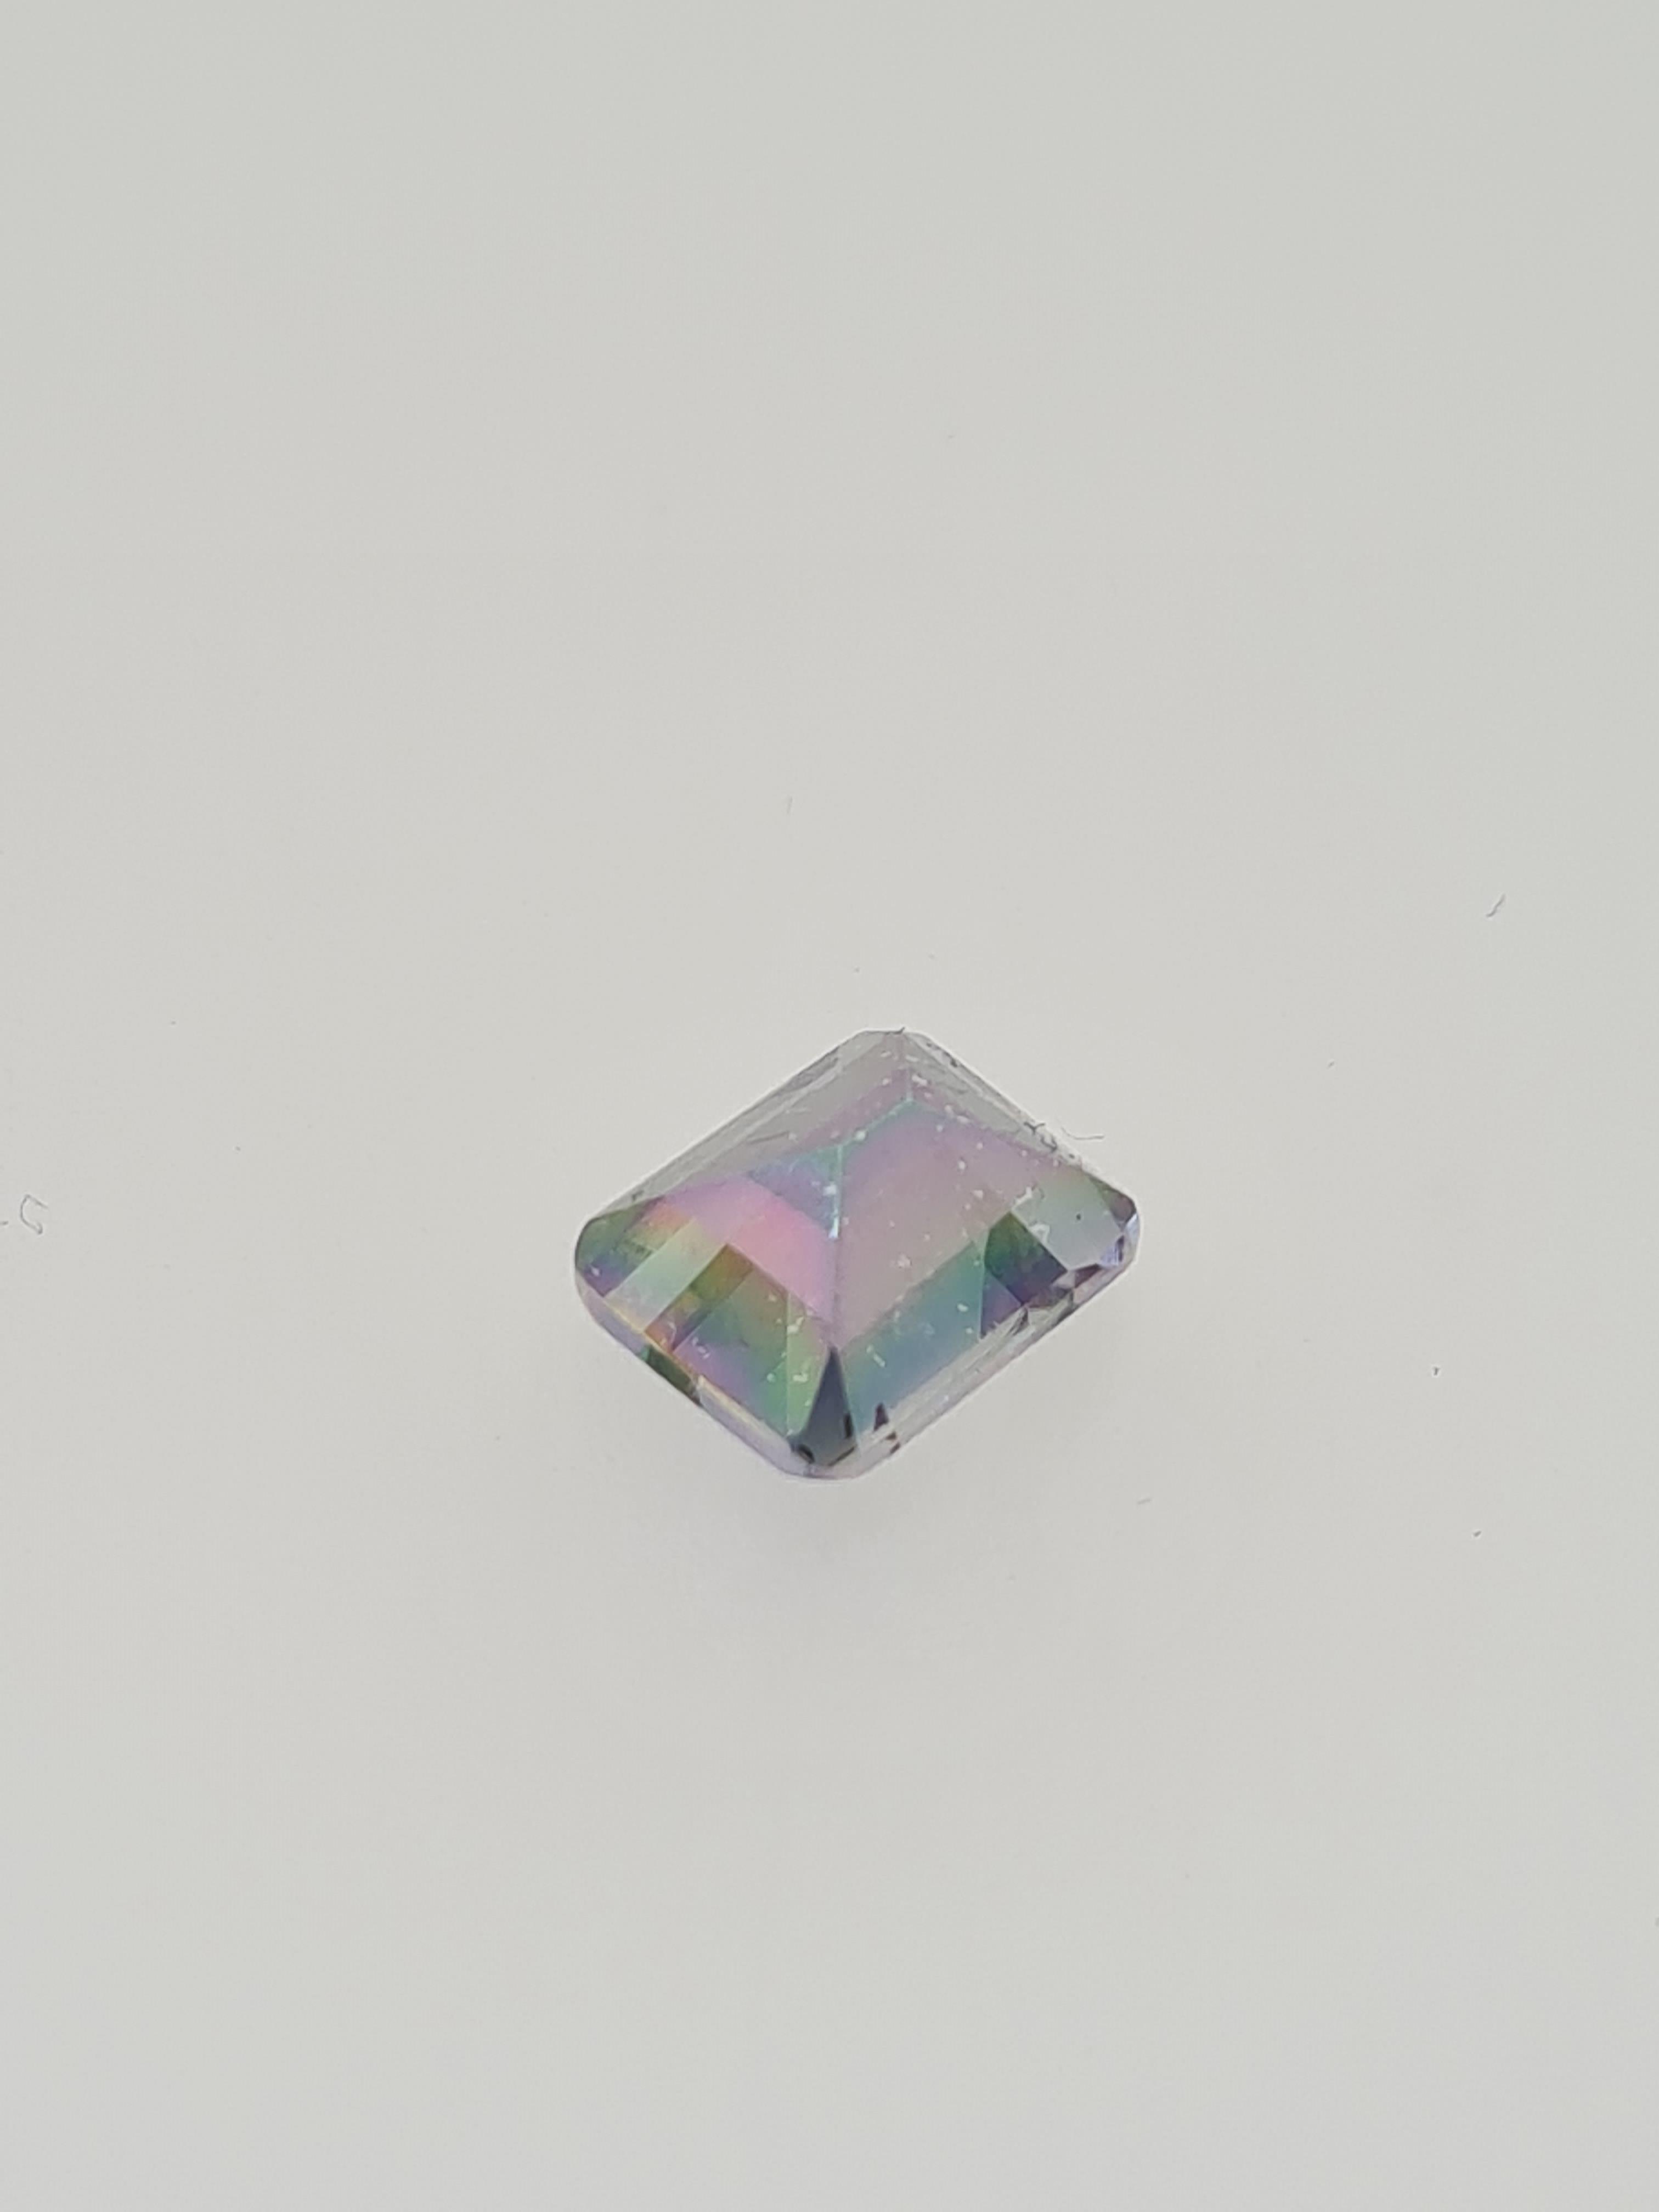 Coated topaz mystic gem stone - Image 2 of 5